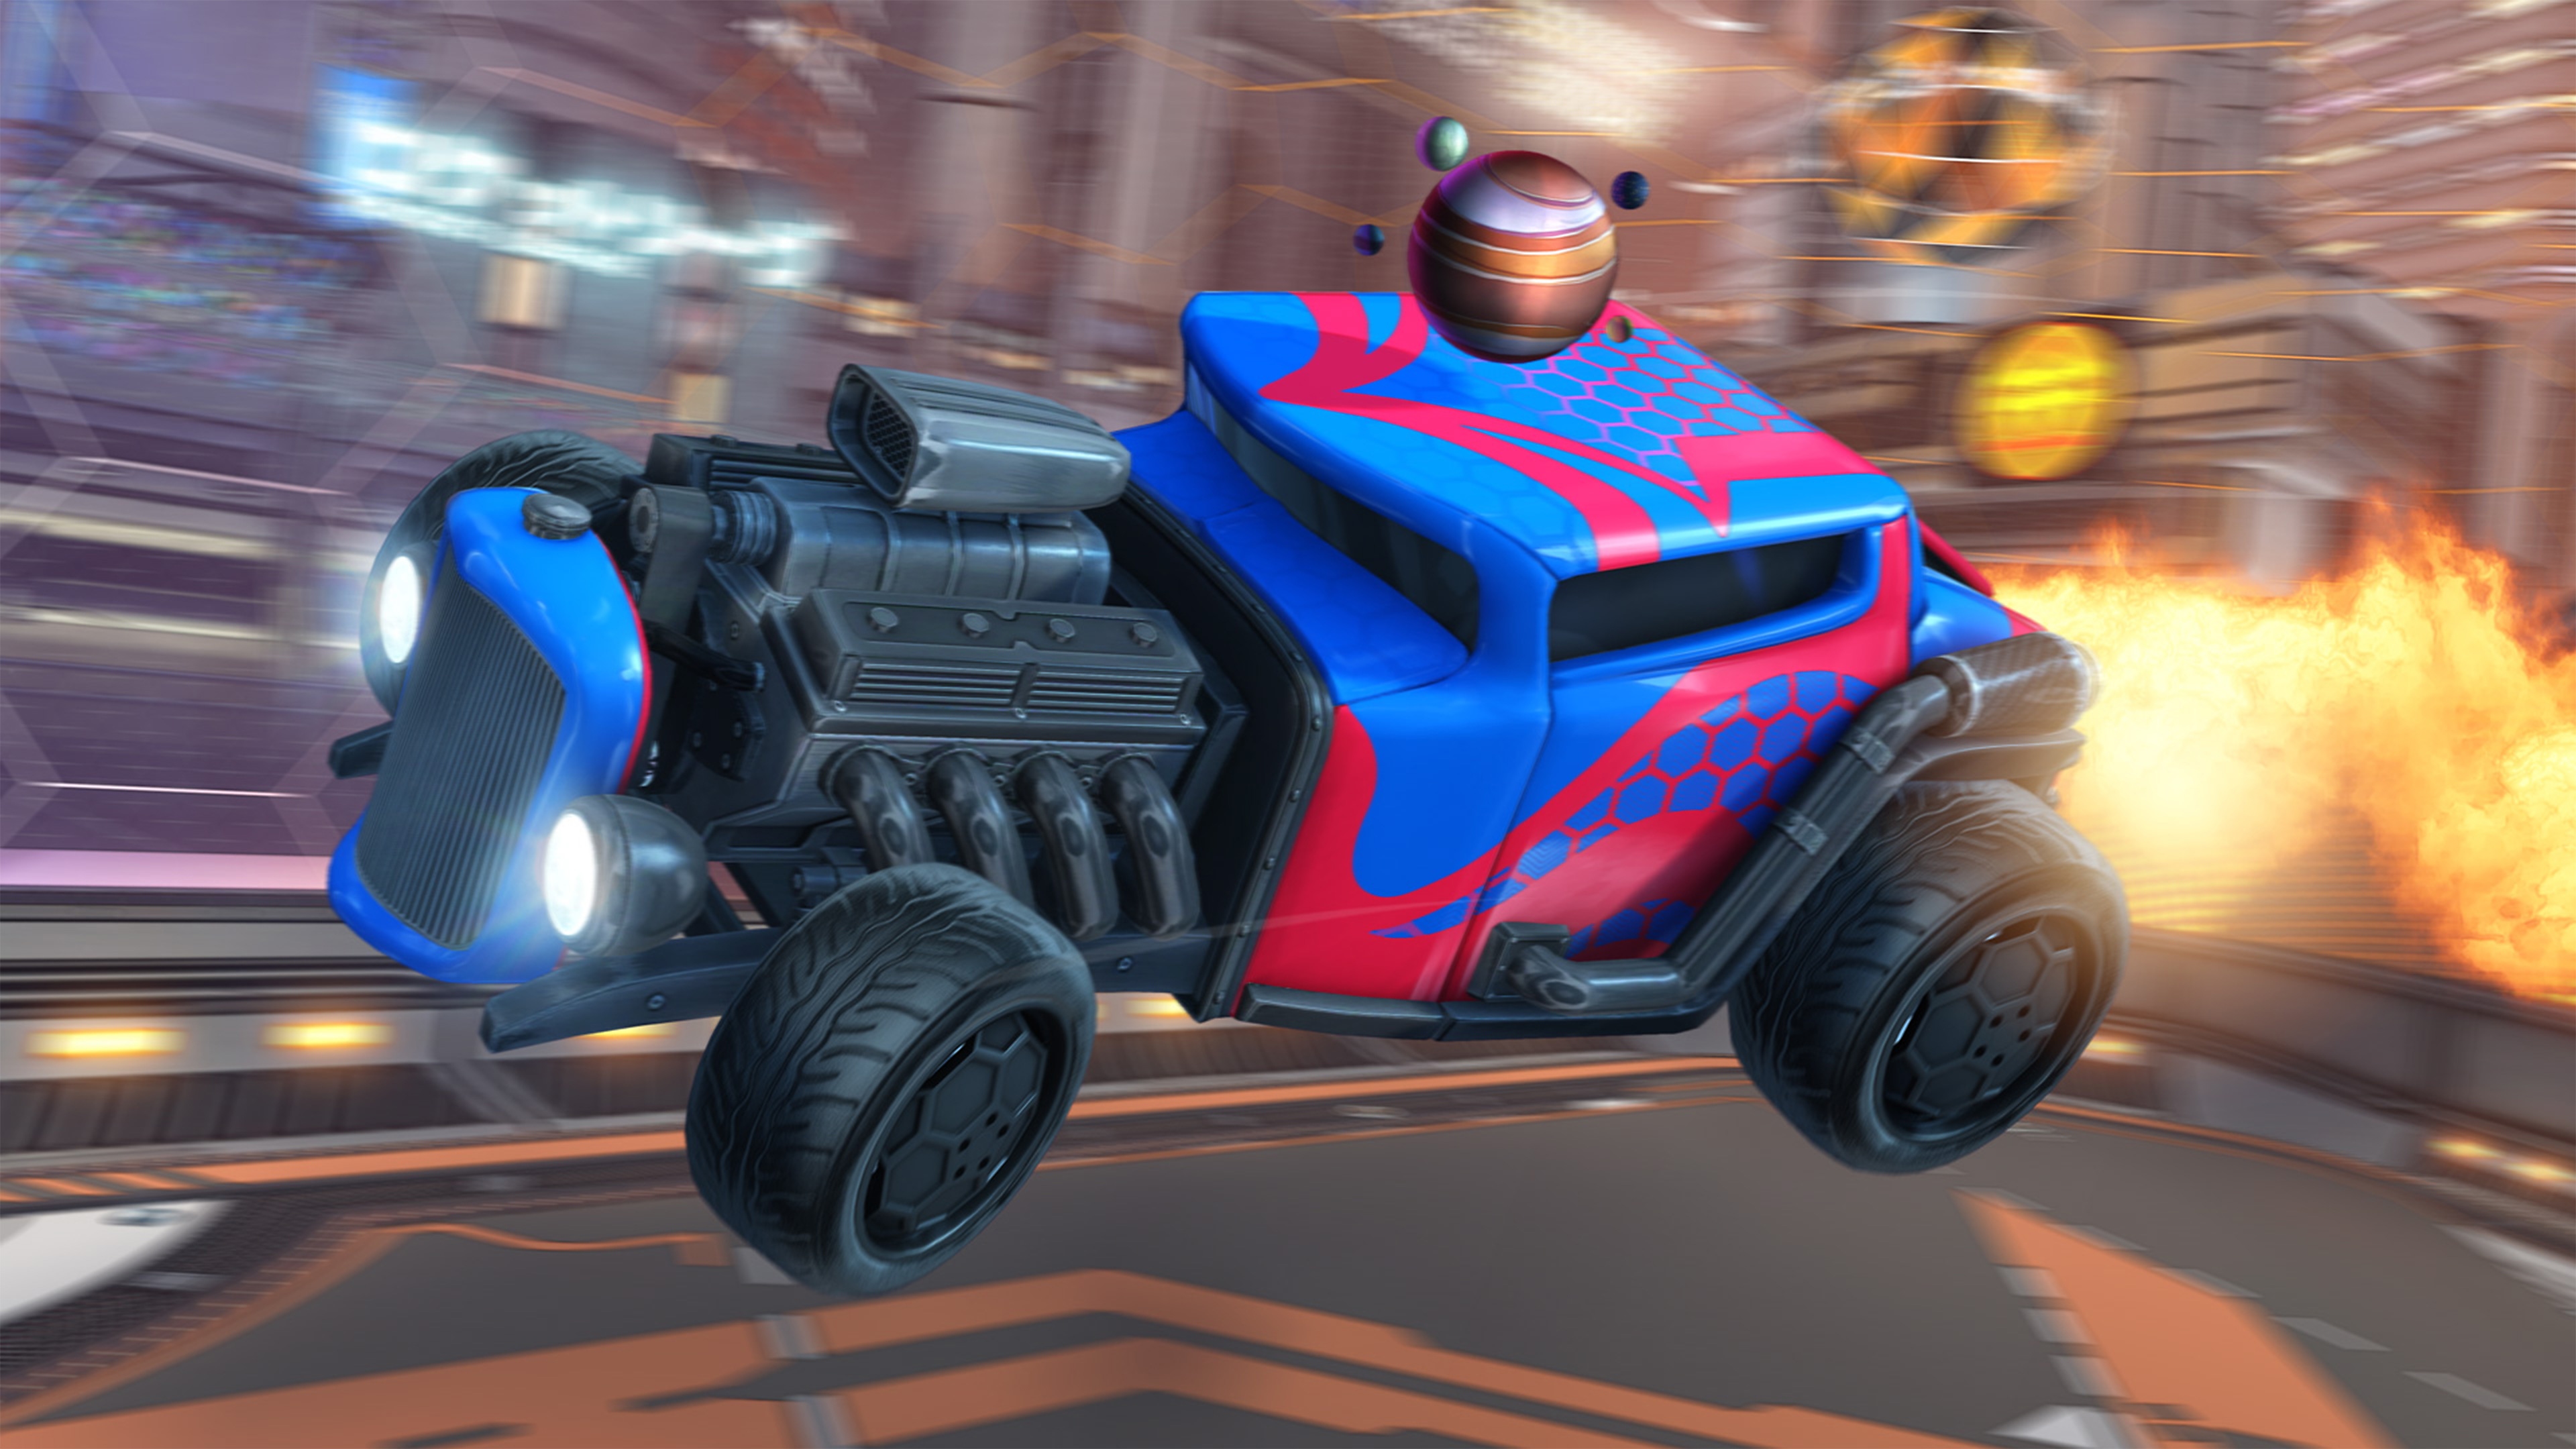 《Rocket League》螢幕截圖，顯示引擎外露、紅藍車漆的飛車風格車輛